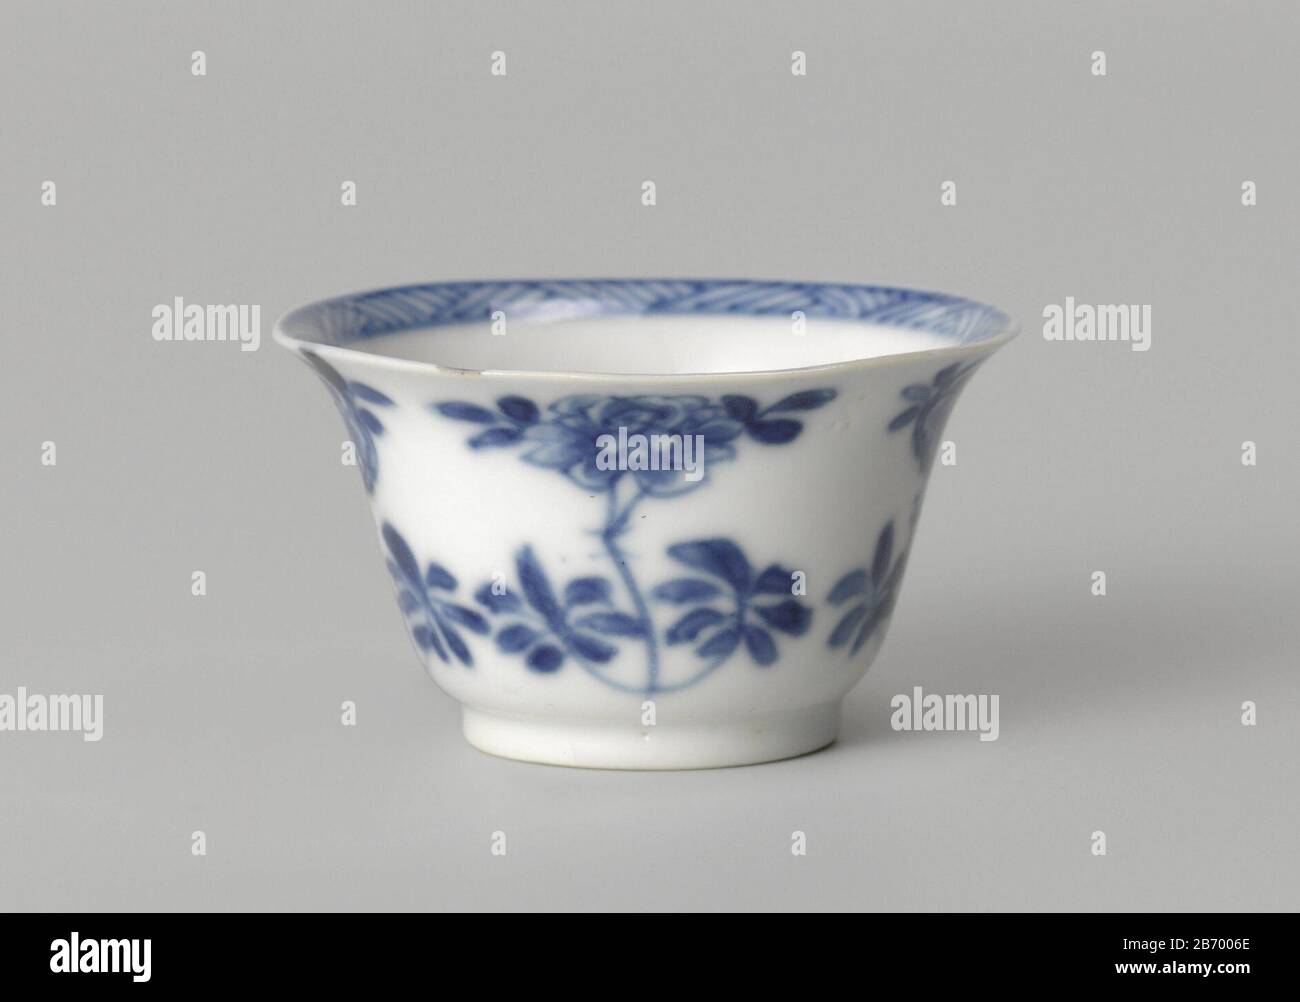 Klokvormige kop met bloemtakken Klokvormige kop van porselein, beschilderd dans onderglaruur blauw. Op de buitenwand bloemtakken (pioen, prunus). Op de bodem een bloemtak en de binnenrand met arceerwerk. Blaouw-wit. Fabricant : pottenbakker: AnoniemPlaats fabrication: Chine Dating: CA. 1700 - env. 1724 School / stijl: Qing-dynastie (1644-1912) / Kangxi-period (1662-1722) / Yongzheng-period (1723-1735) kenmerken physique: Porseléine met onderglacer blauw matériel: Porselein viruur kobalt Techniek: Draend / bakerken in / 2. Banque D'Images